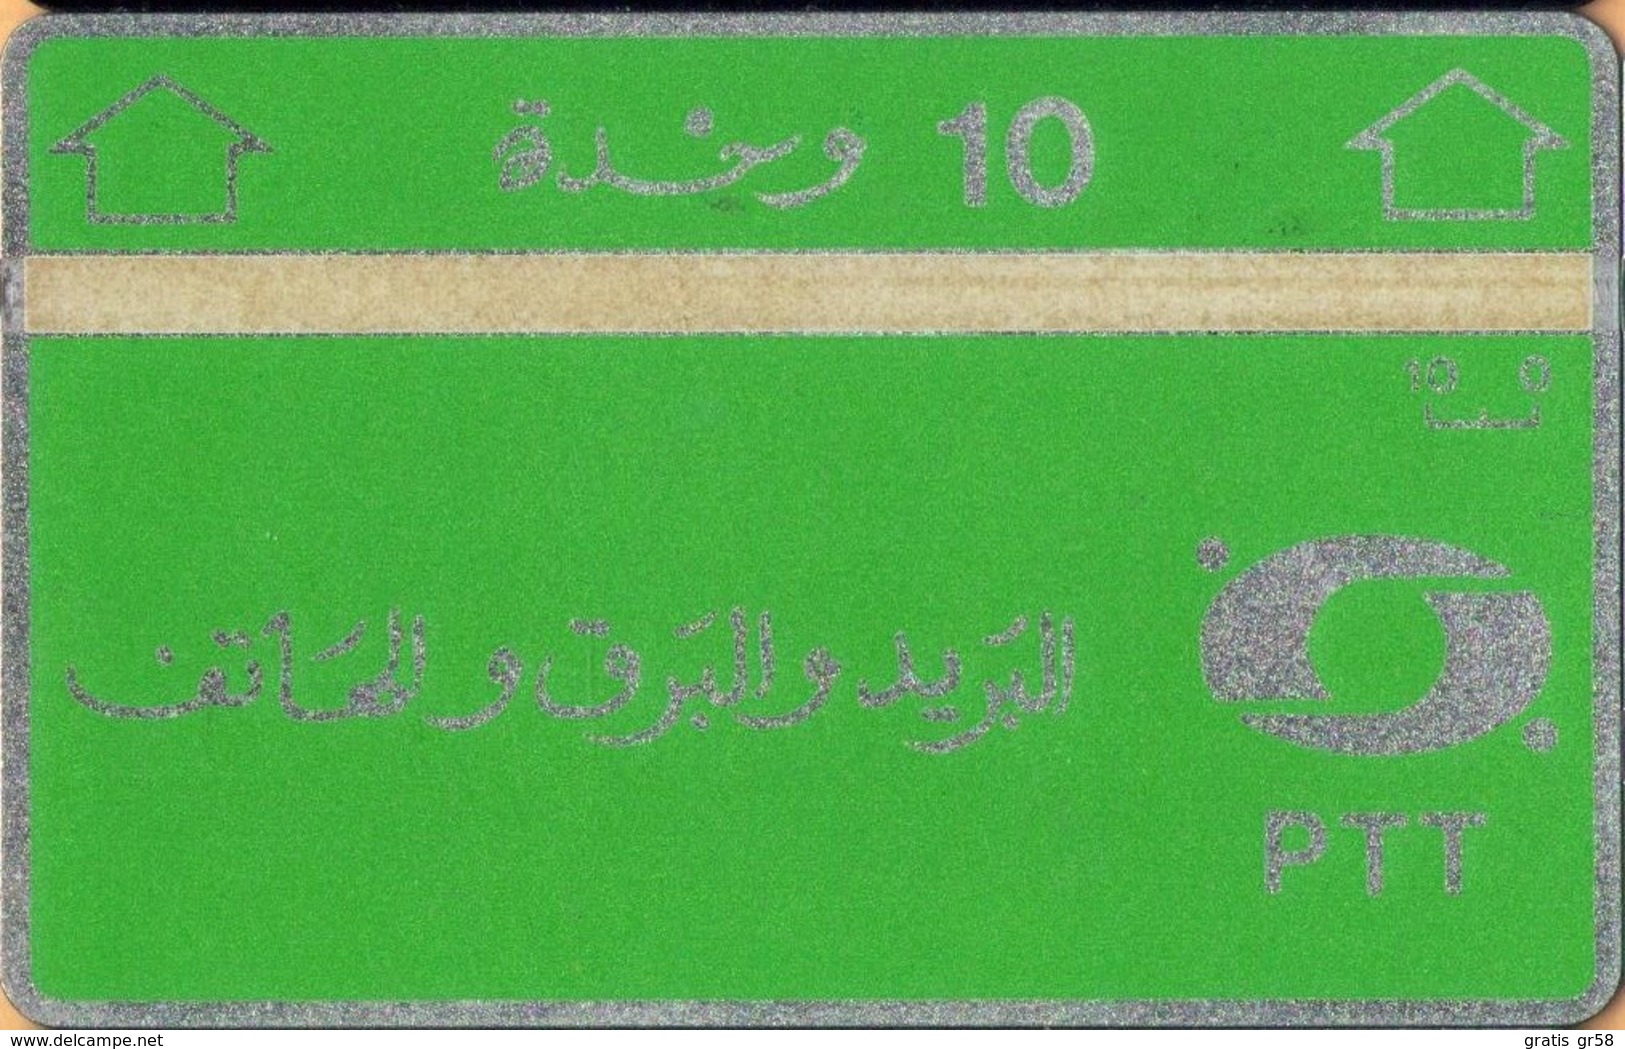 Algeria -ALG-PT-03, L&G, Green & Silver, 4Mm Band, 706B, 10U, 60,000ex, 1987, Mint - Argelia